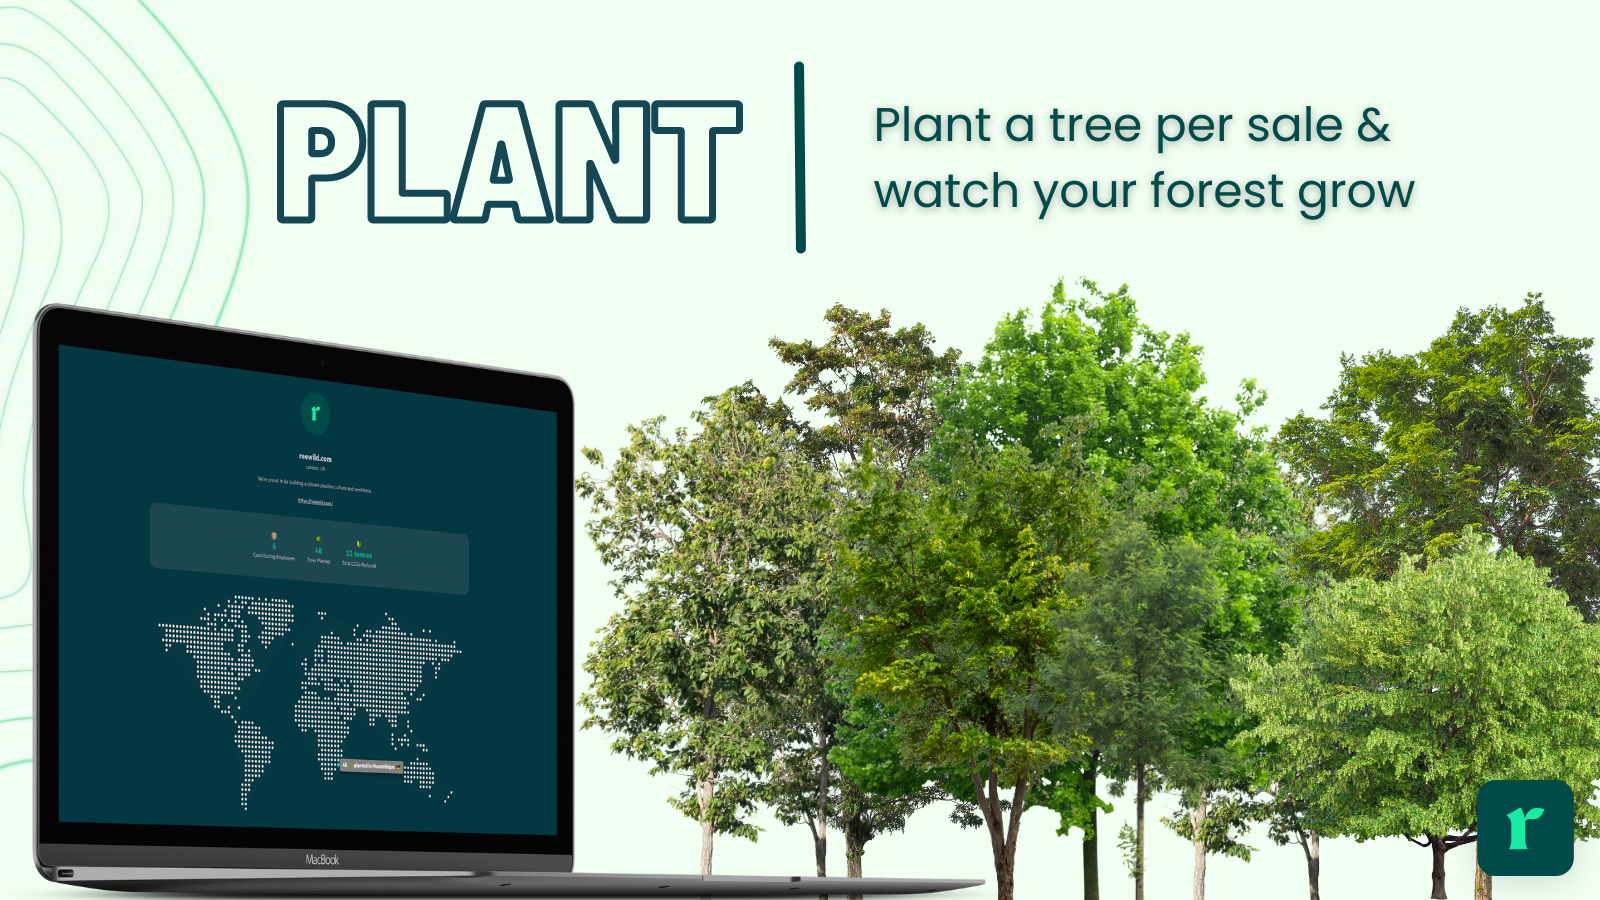 Plant a tree per sale